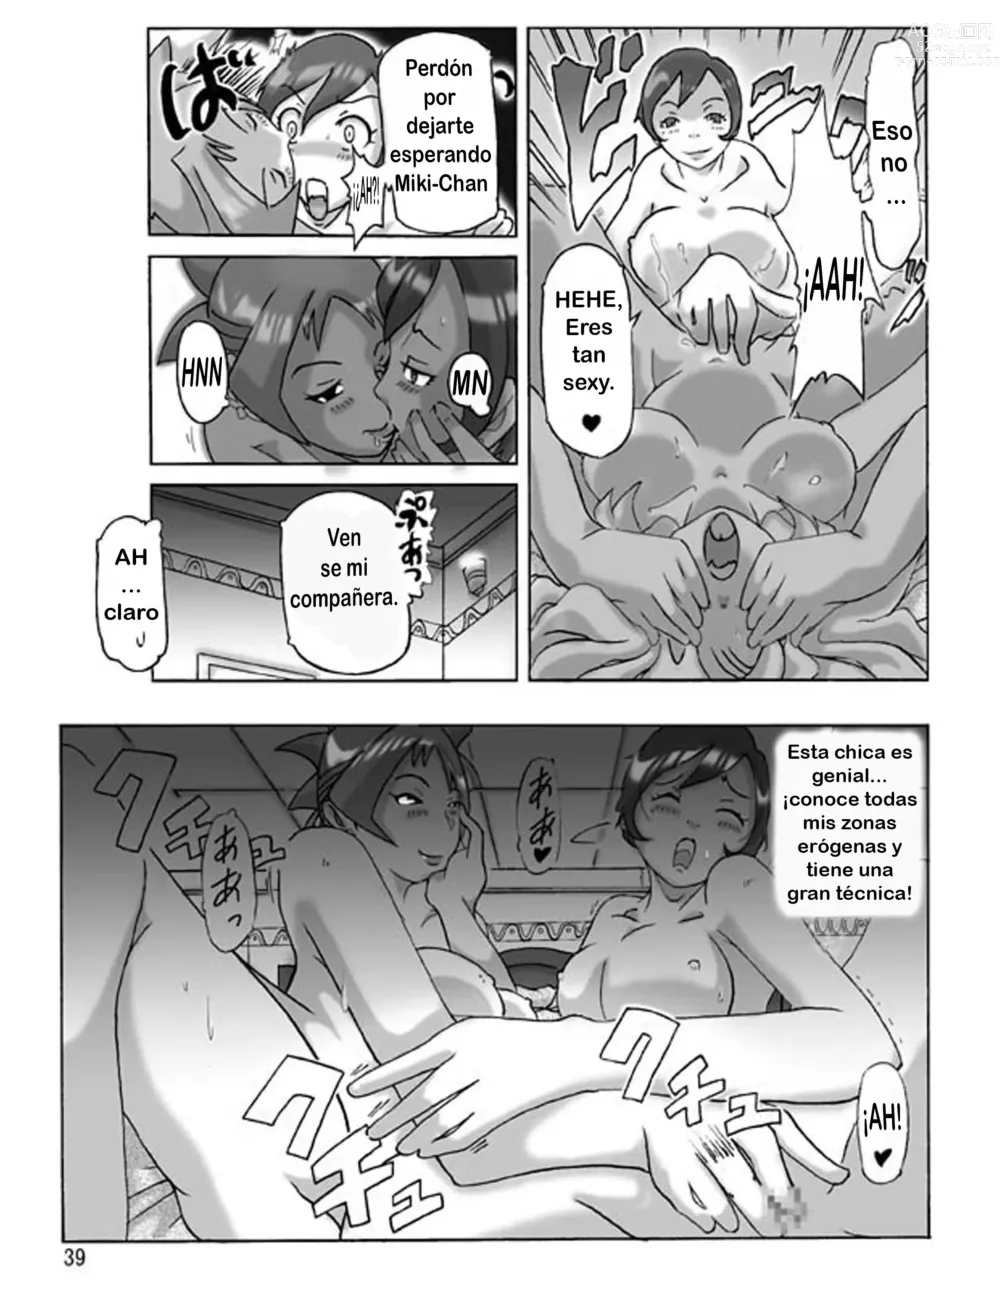 Page 39 of doujinshi Katta Kigurumi Sono Yon